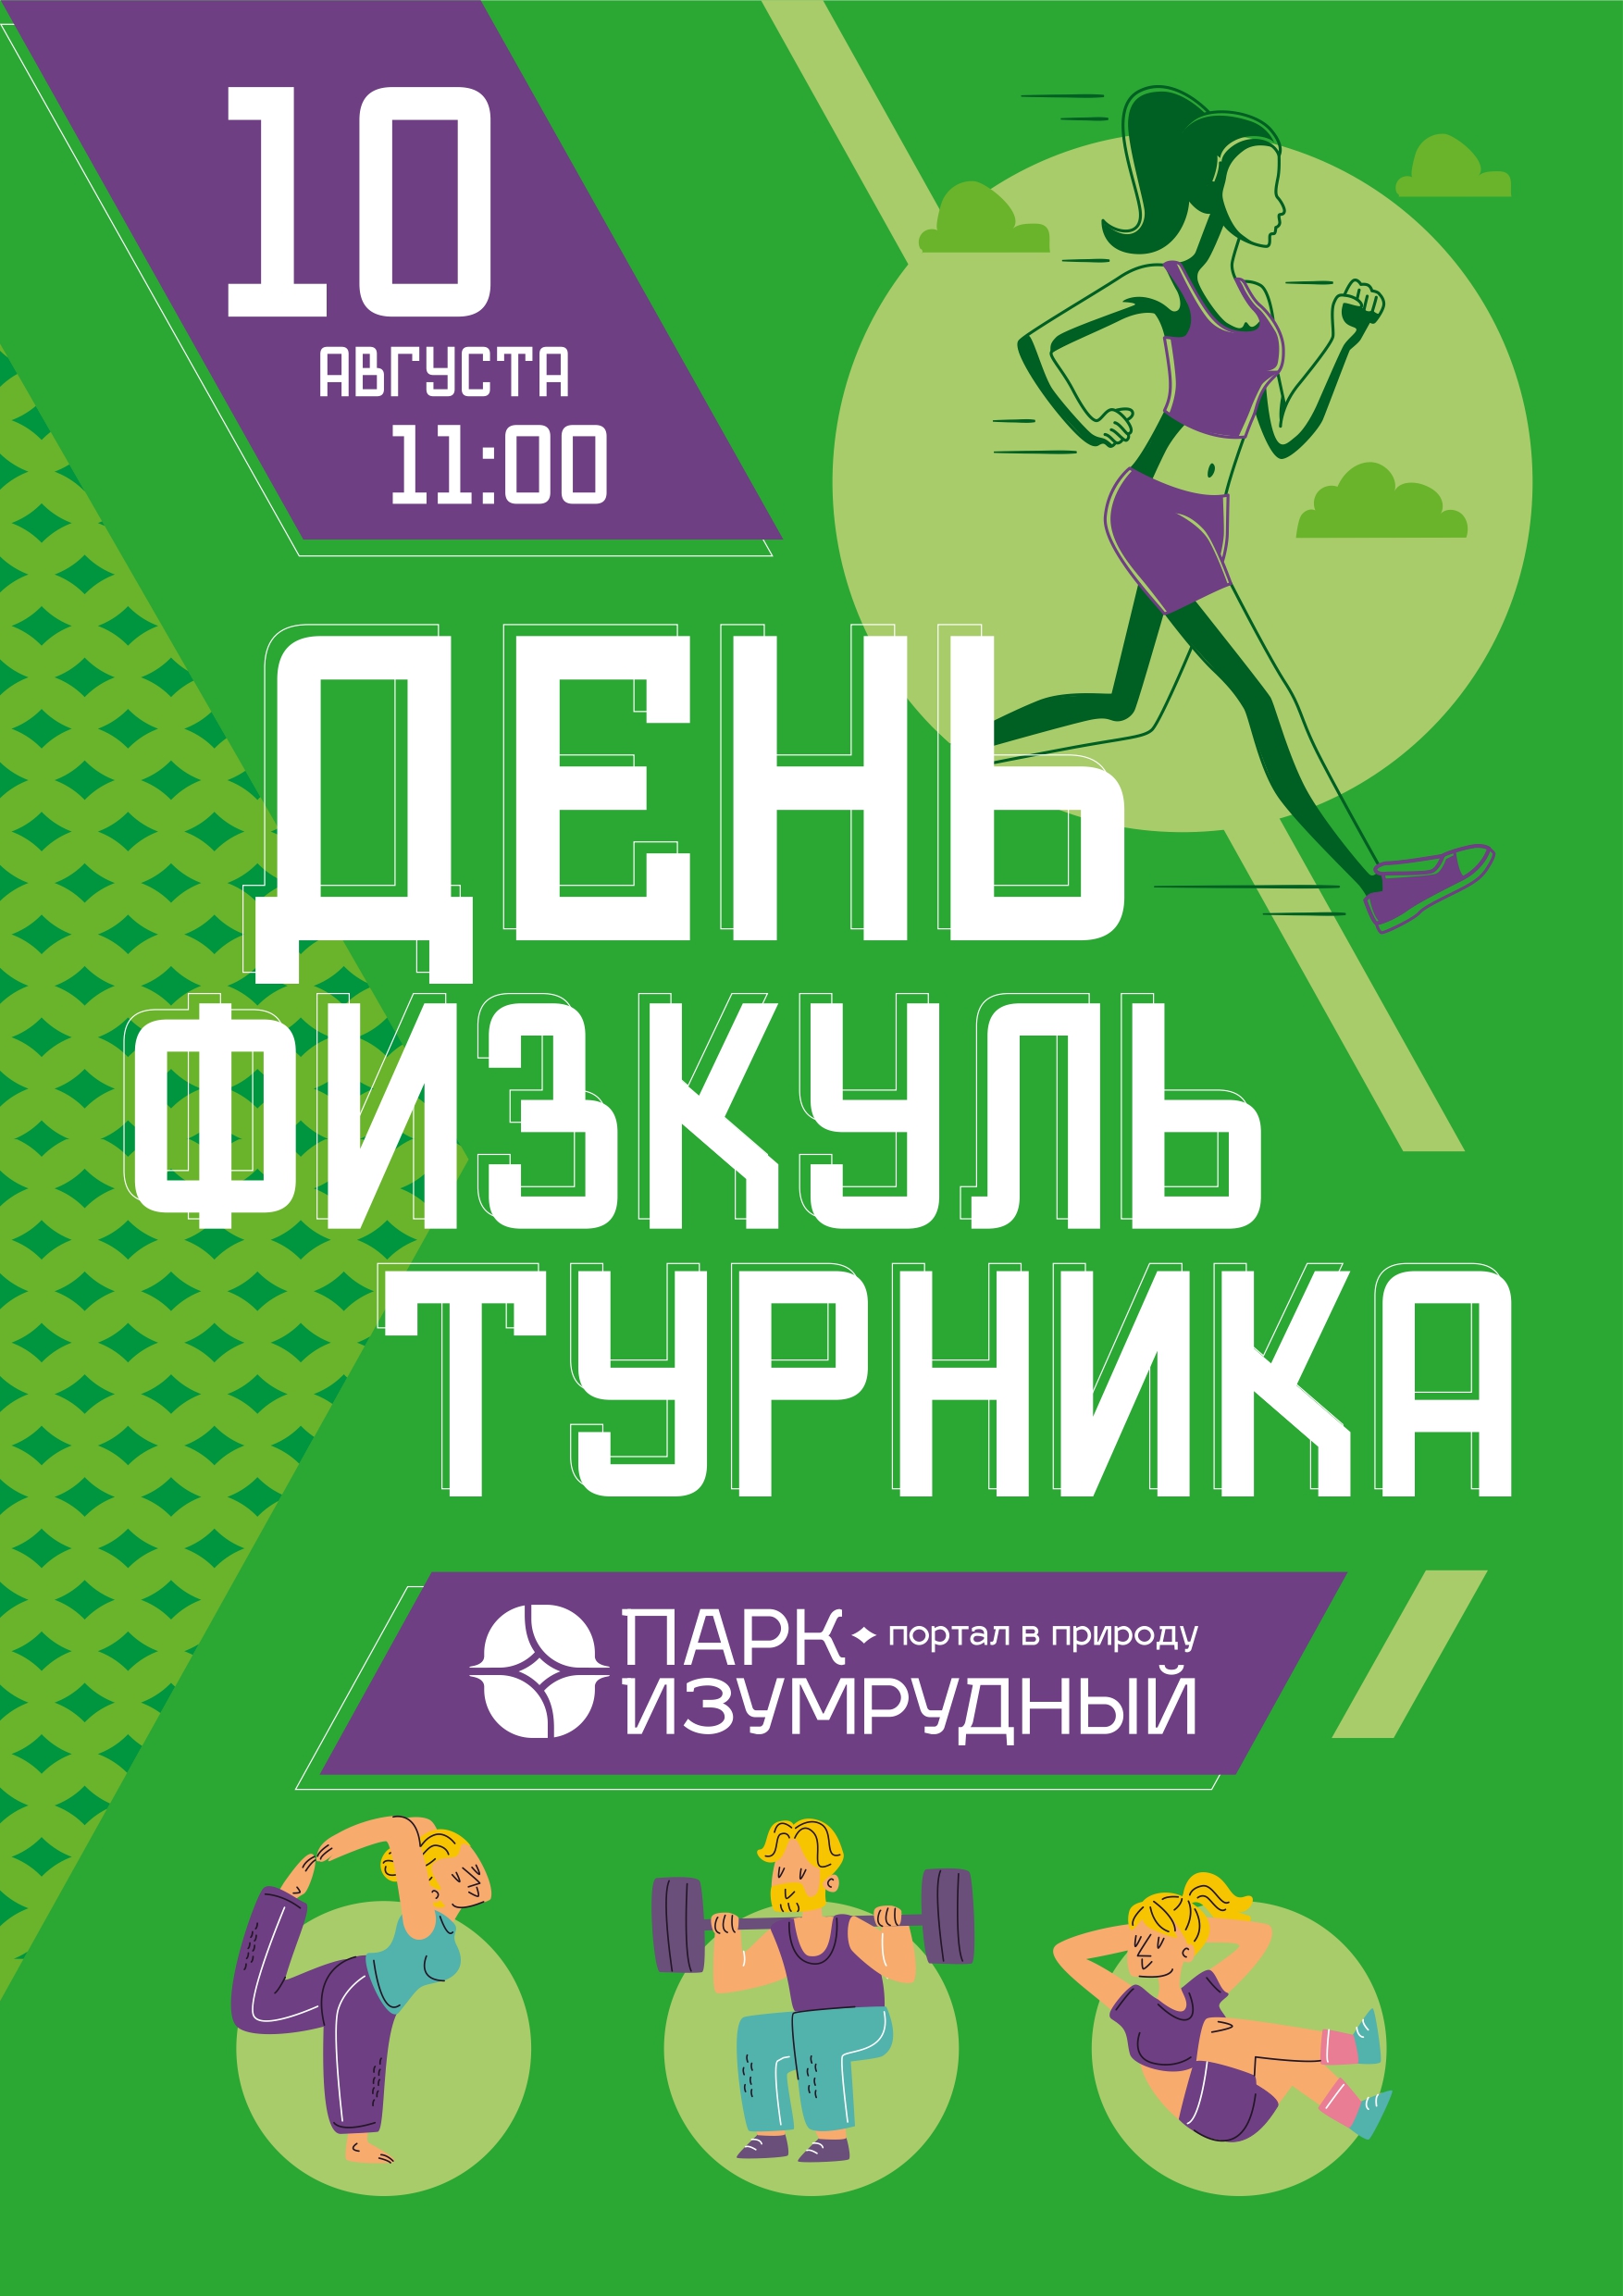 В День физкультурника в Октябрьском районе пройдет Фестиваль спорта